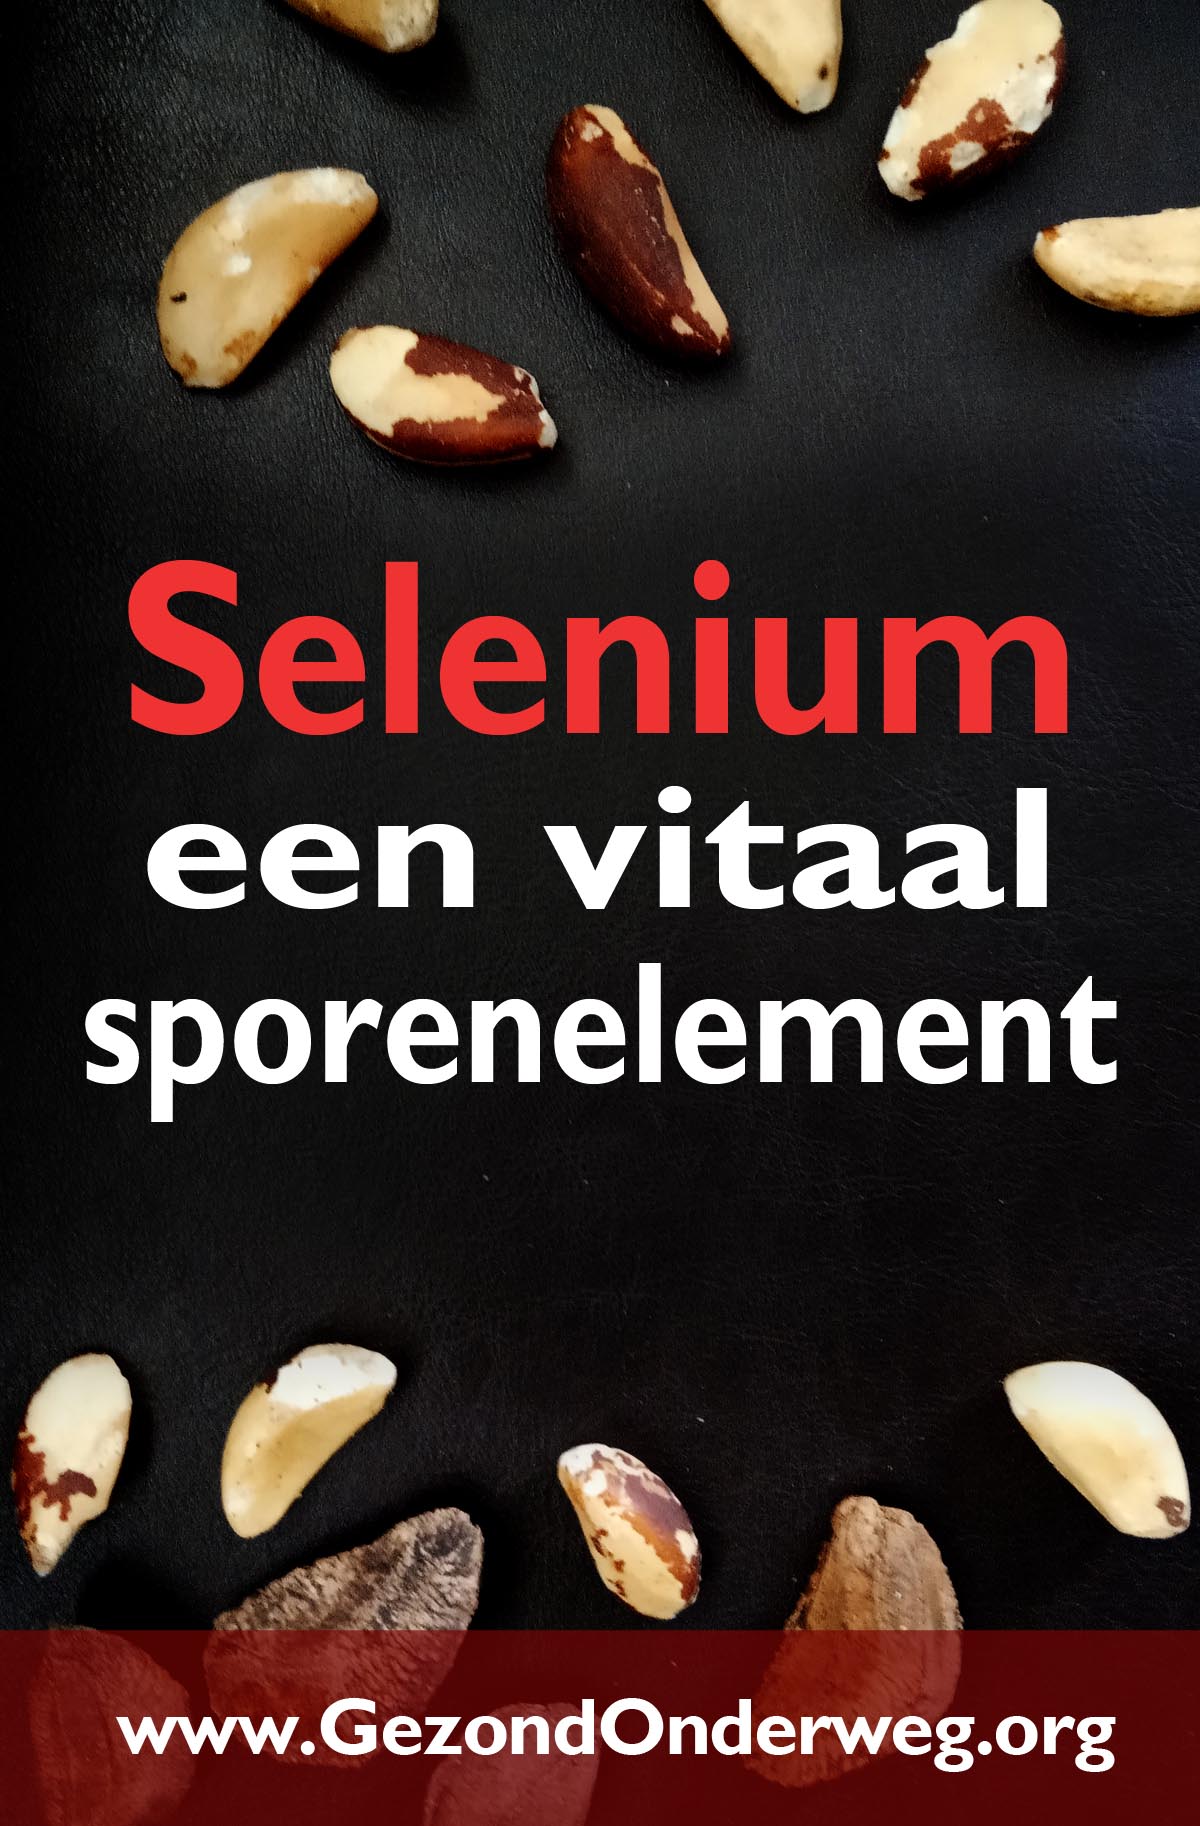 Selenium - een vitaal sporenelement